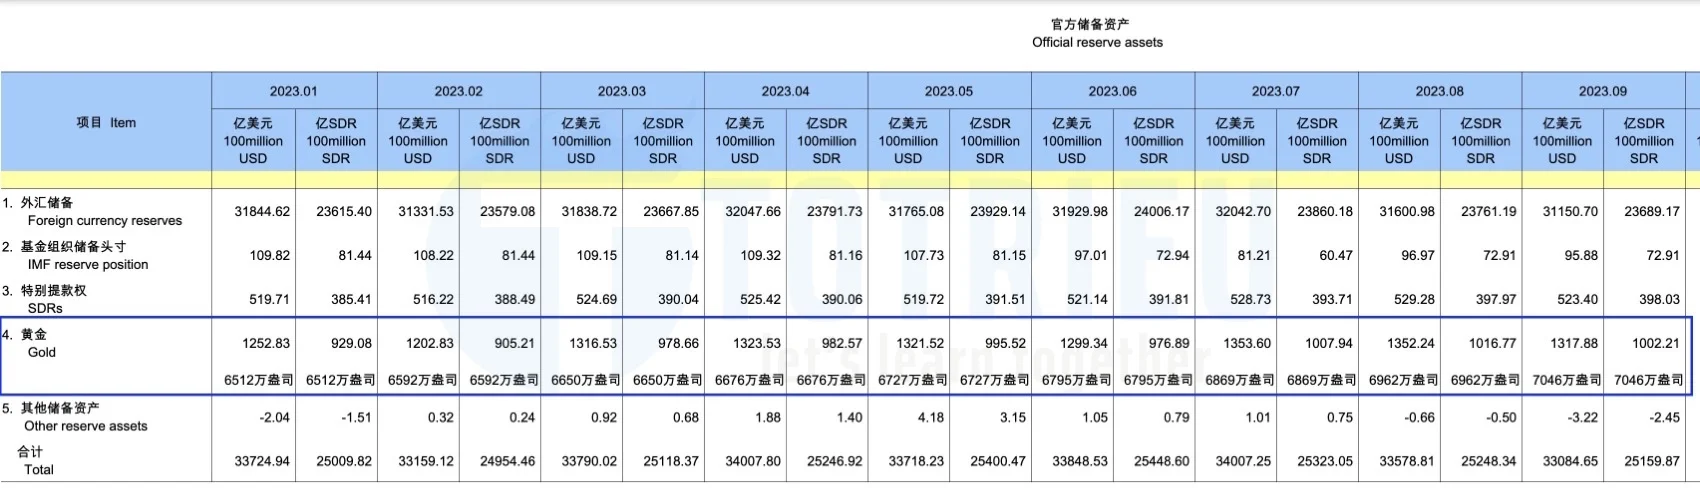 Thống kê dự trữ Gold của Trung Quốc tới tháng 09-2023